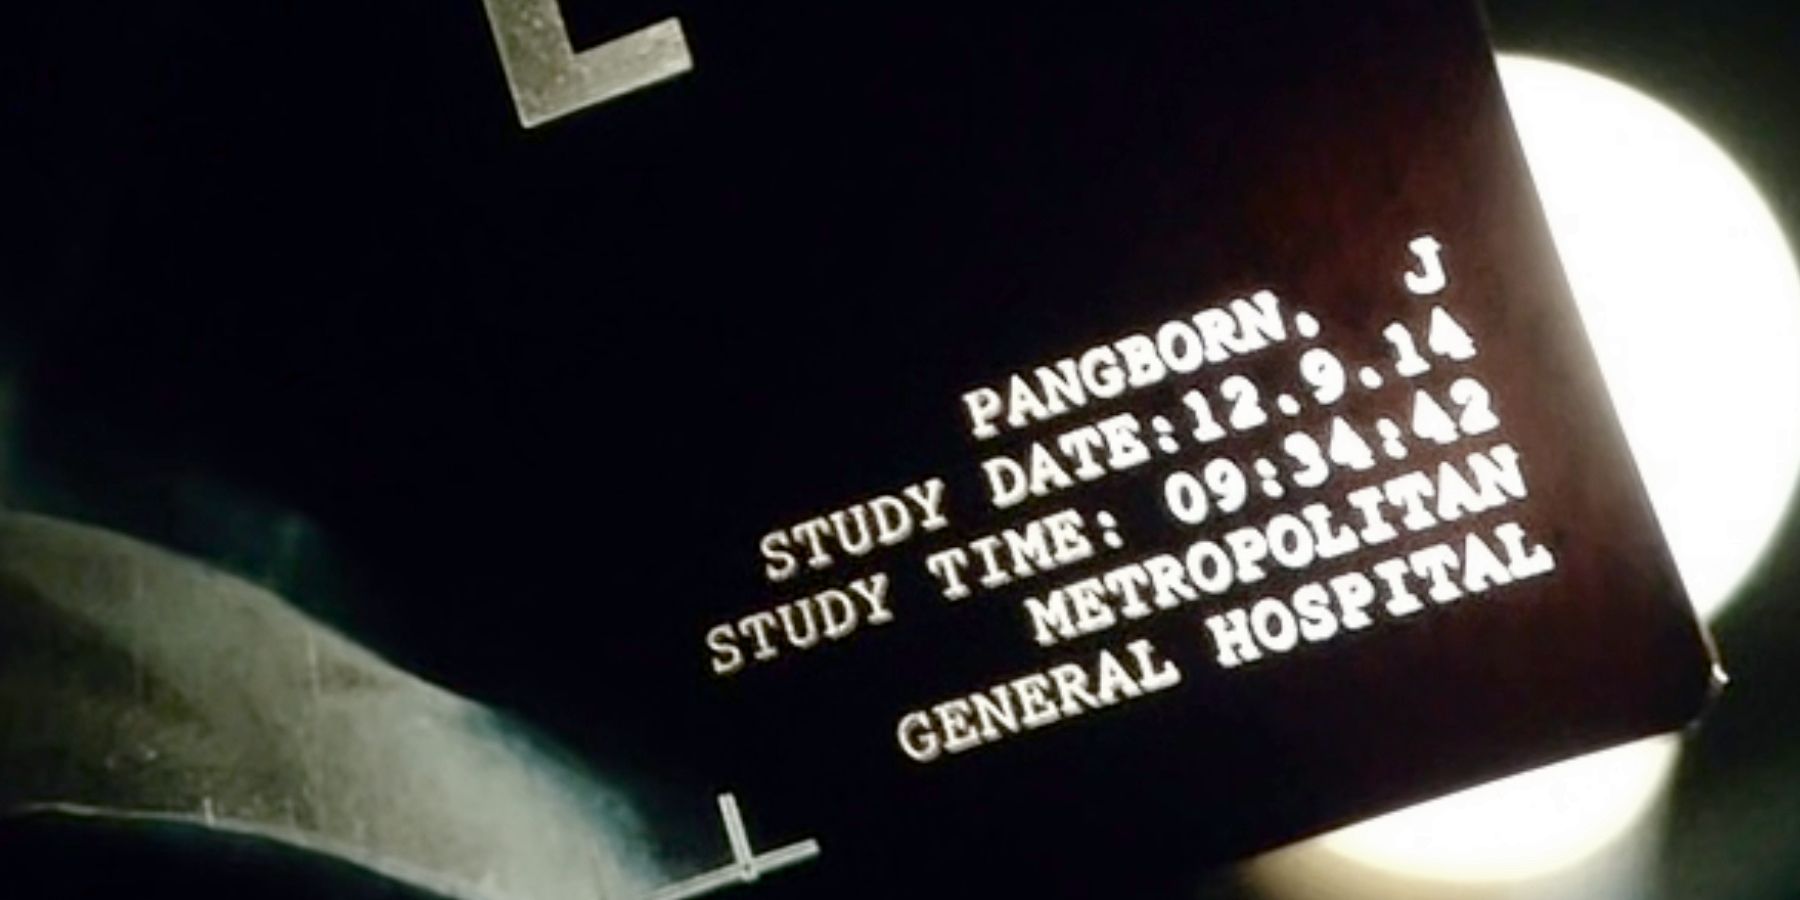 Doctor Strange Pangborn Xray Date Year